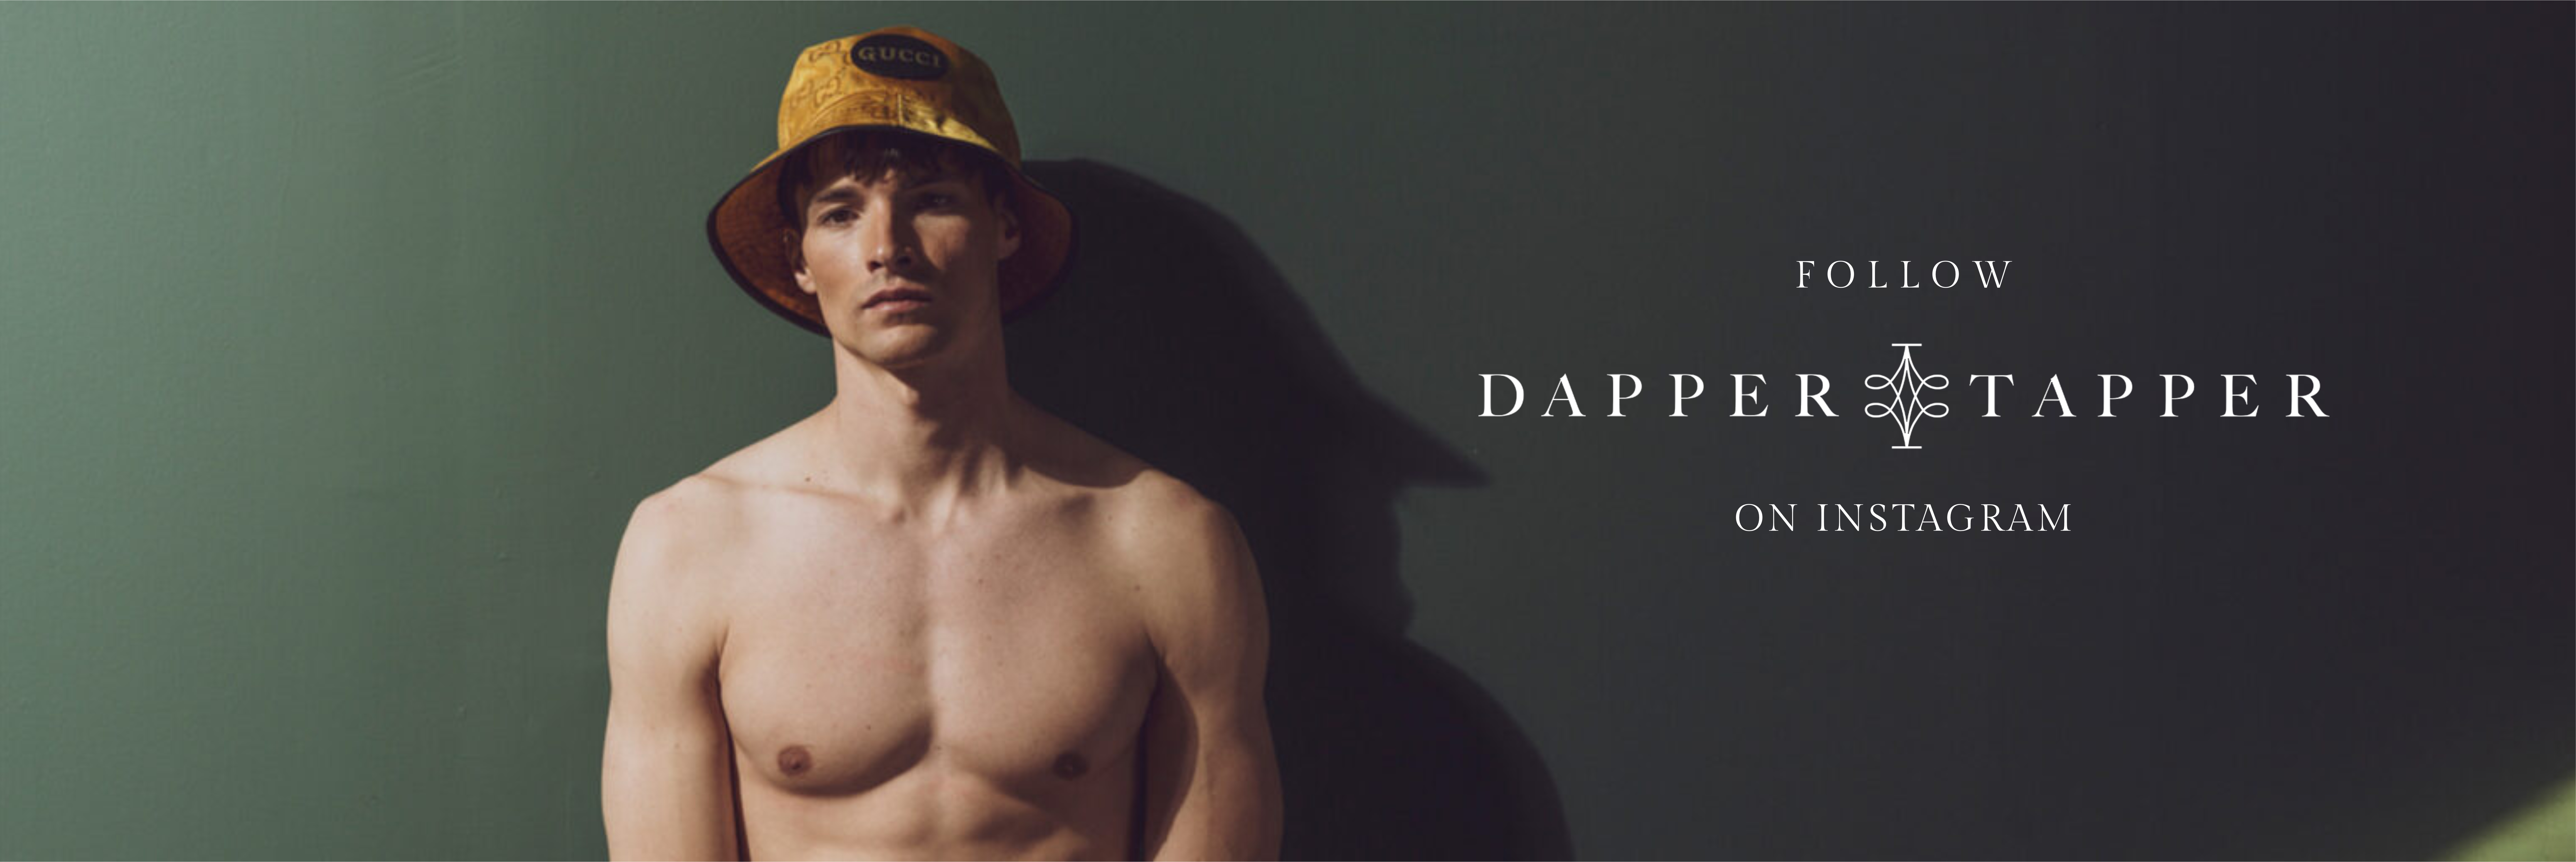 Follow Dapper Tapper on Instagram